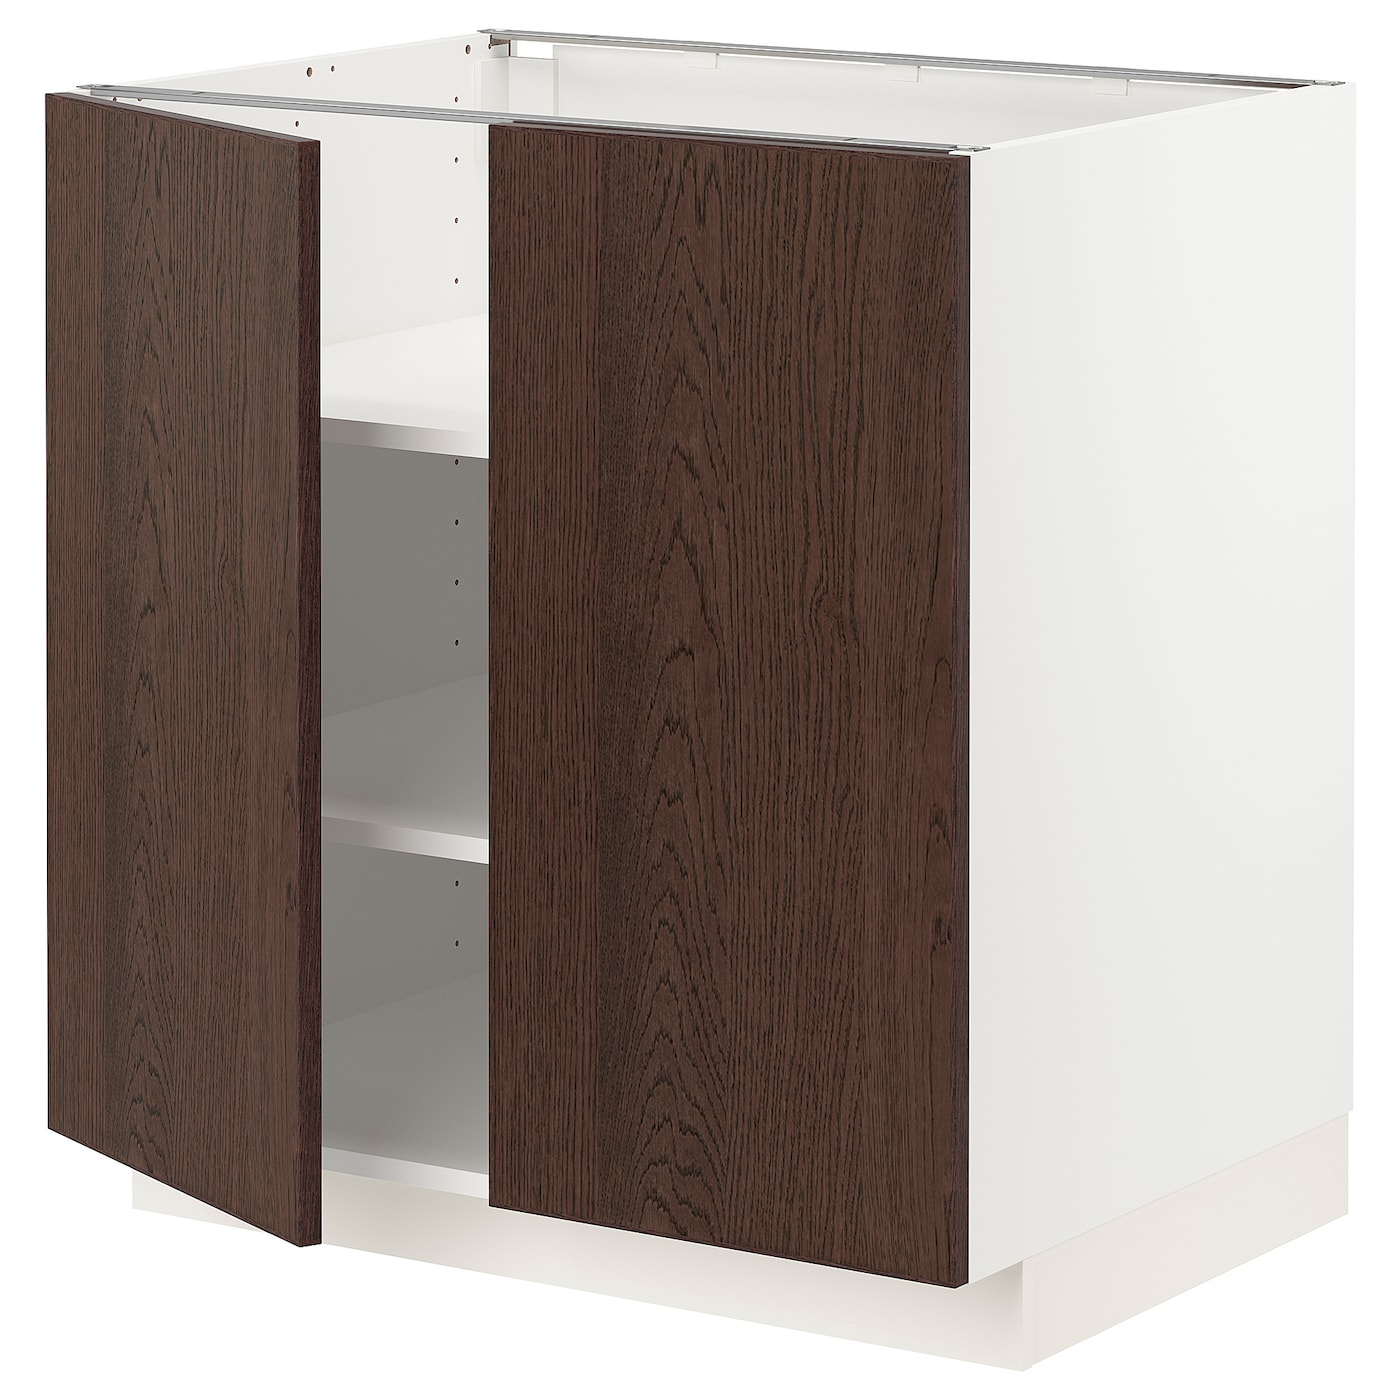 Напольный шкаф - METOD IKEA/ МЕТОД ИКЕА,  88х80 см, белый/коричневый